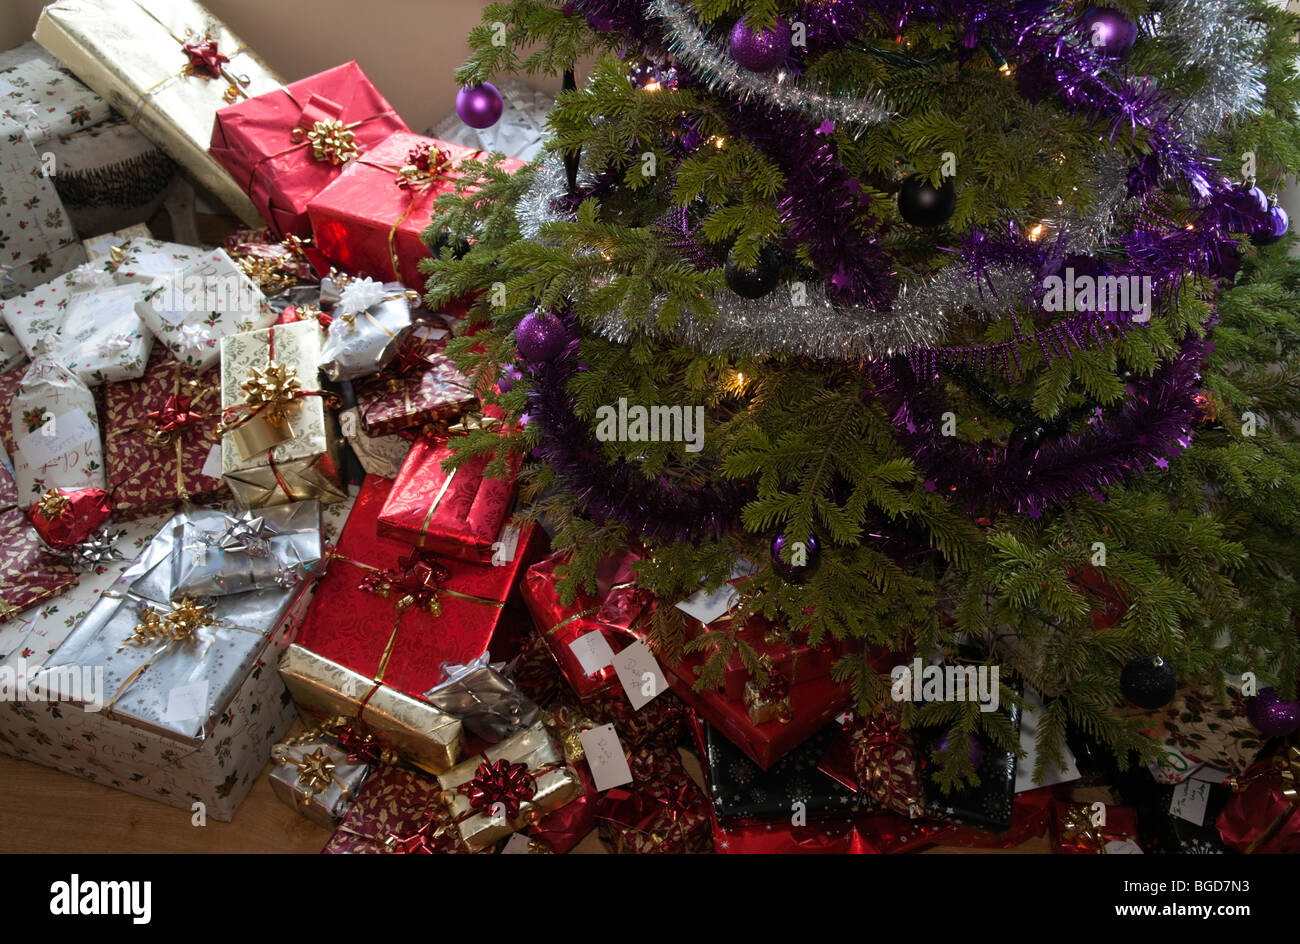 Regali Di Natale Per La Famiglia.Regali Di Natale Grande Gruppo Di Presenta Pronto Per La Famiglia Il Giorno Di Natale Regno Unito Con Albero Di Natale Foto Stock Alamy